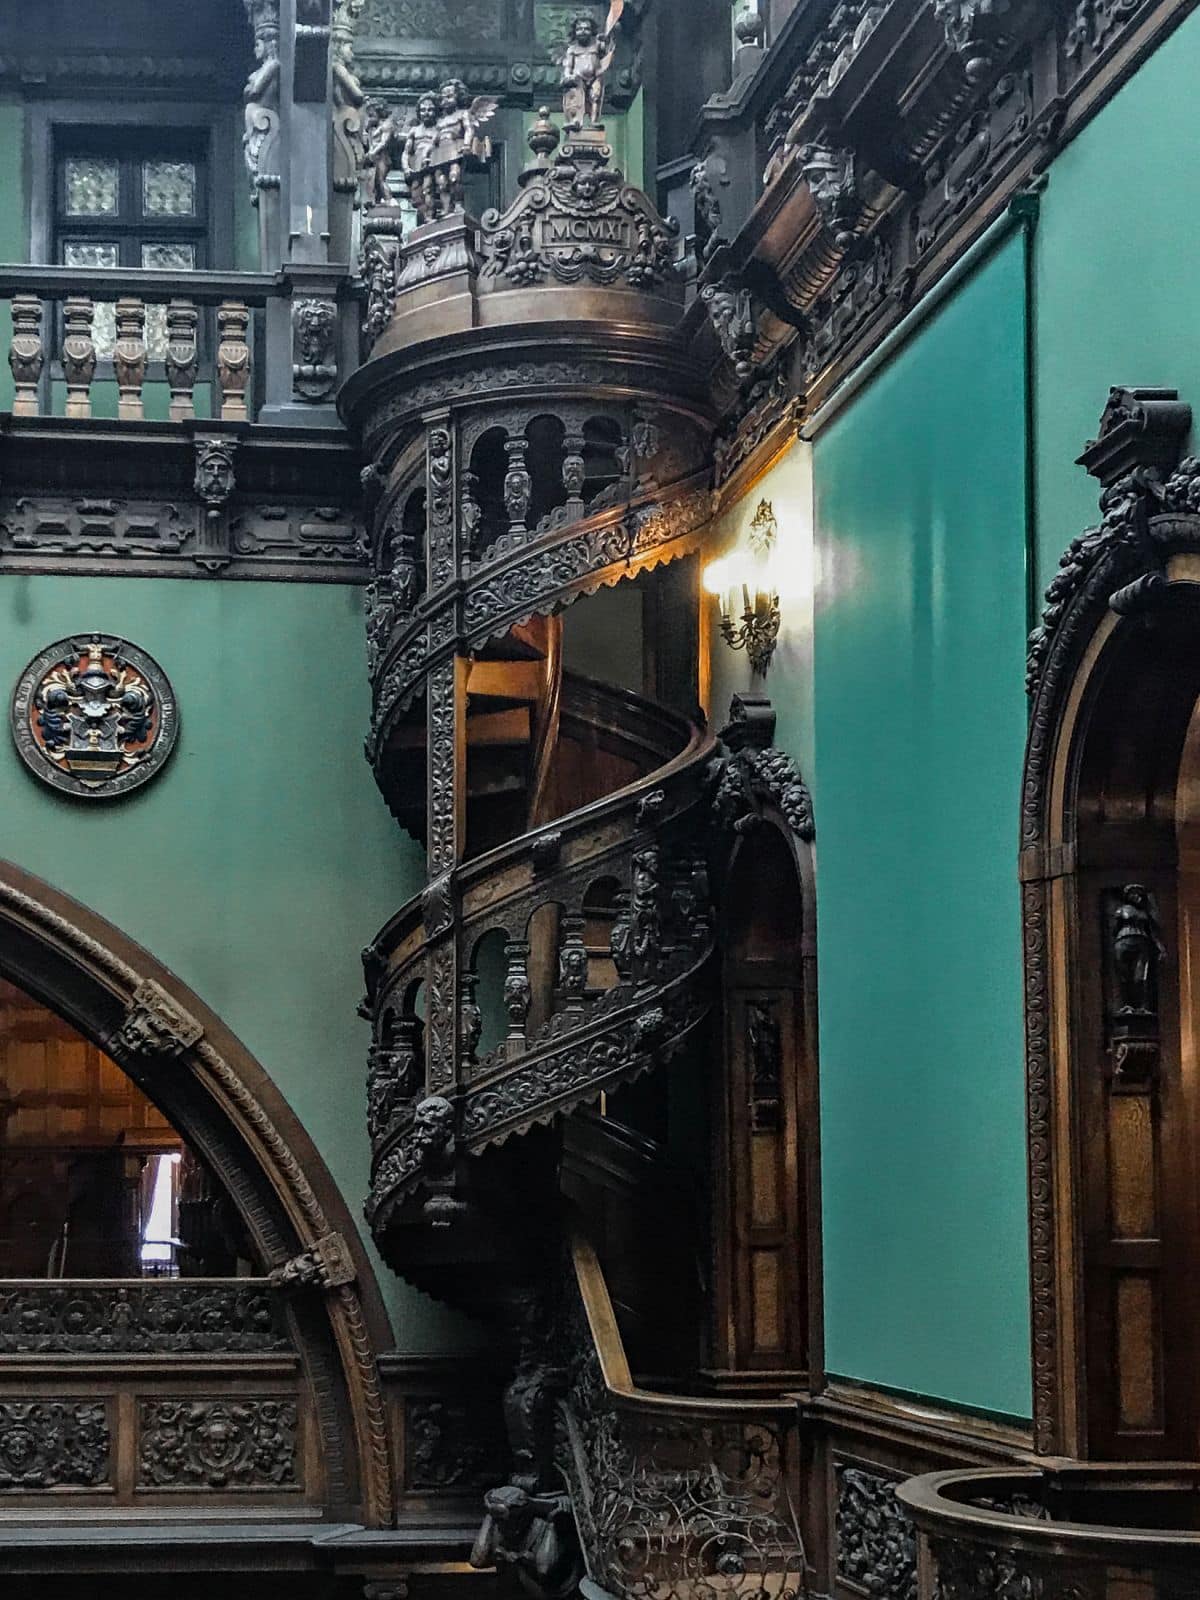 Przepiękne schody w pałacu Peles. To z ich powodu przyjechałem do Rumunii